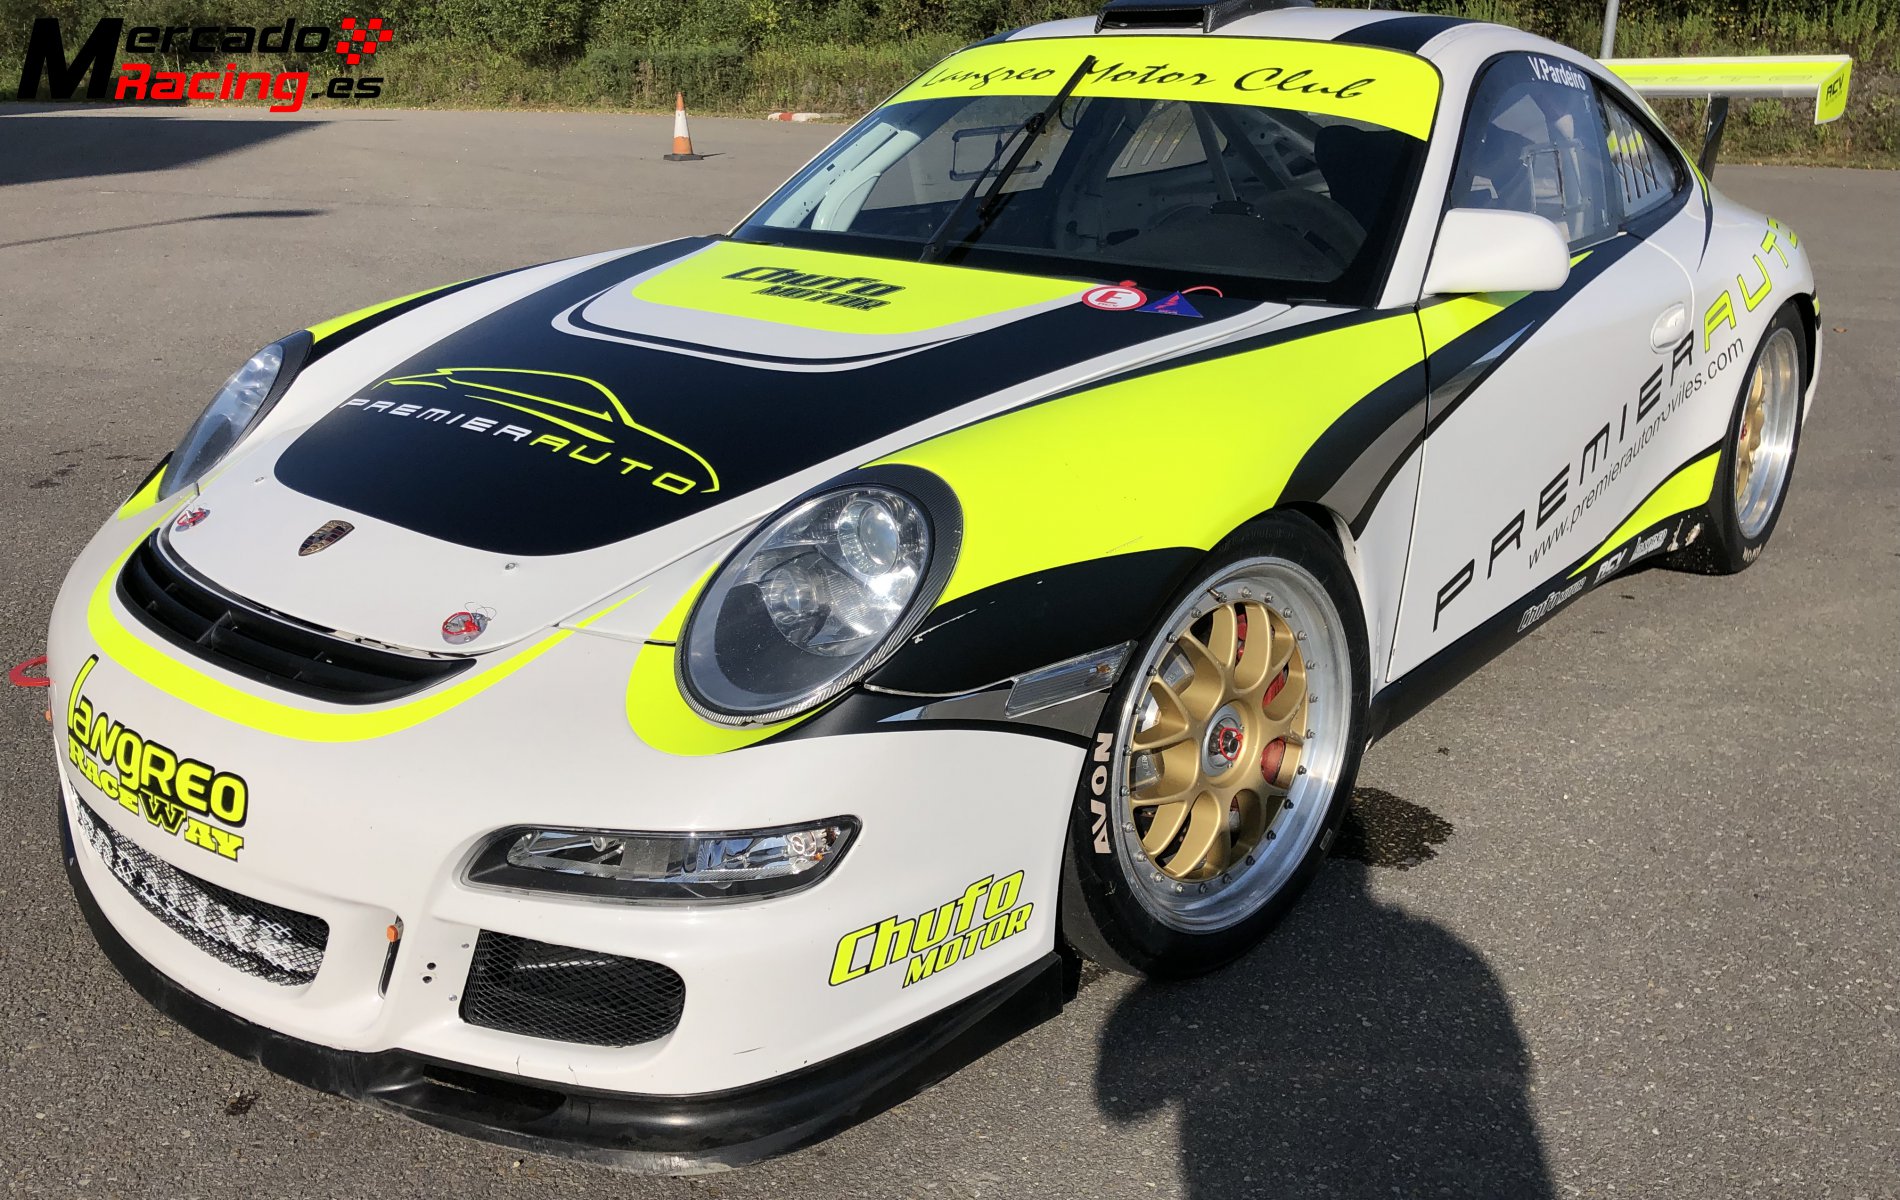 Porsche 997 gt3 cup rallye “78.000€”